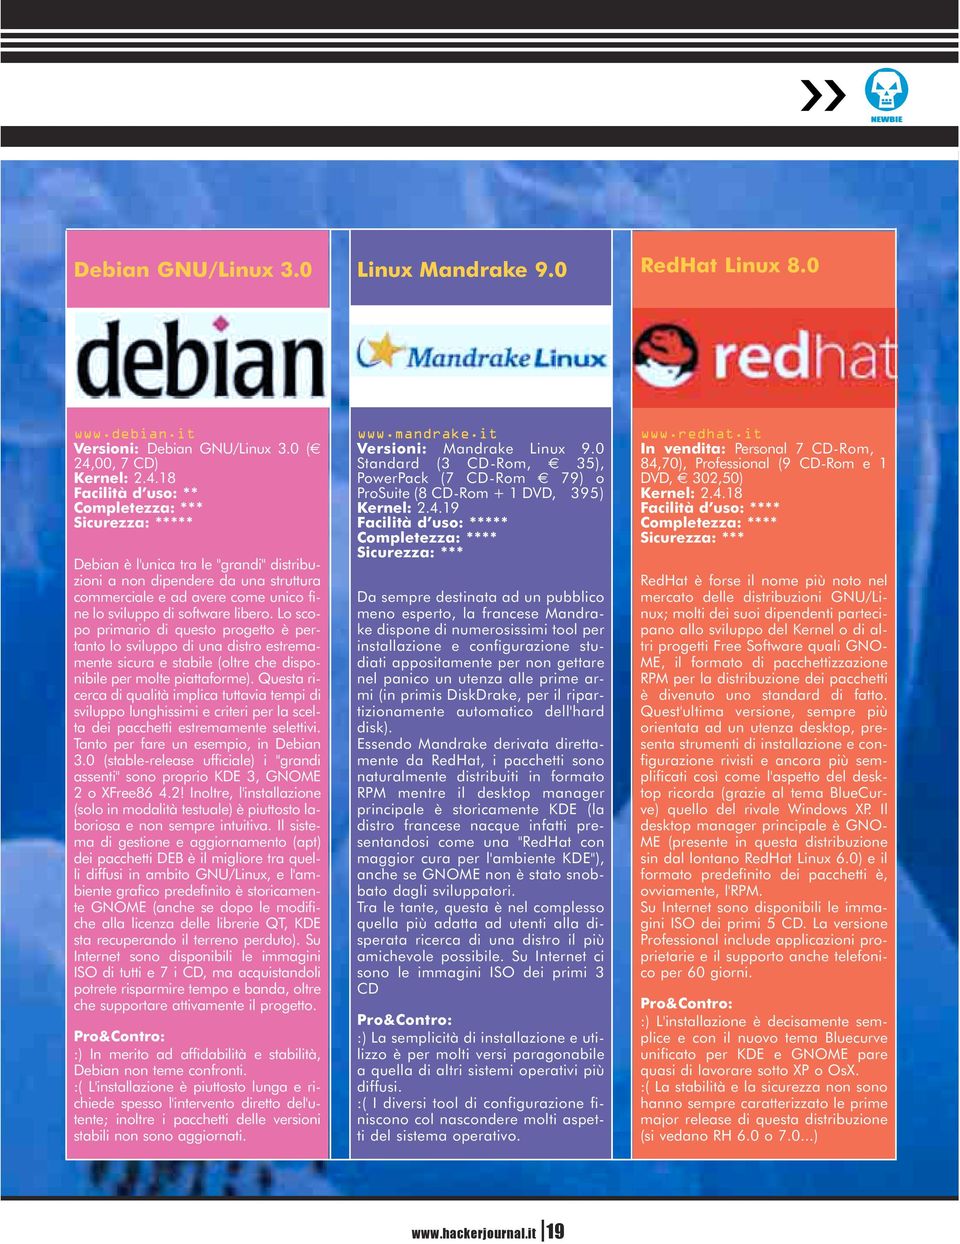 18 Facilità d uso: ** Completezza: *** Sicurezza: ***** Debian è l'unica tra le "grandi" distribuzioni a non dipendere da una struttura commerciale e ad avere come unico fine lo sviluppo di software